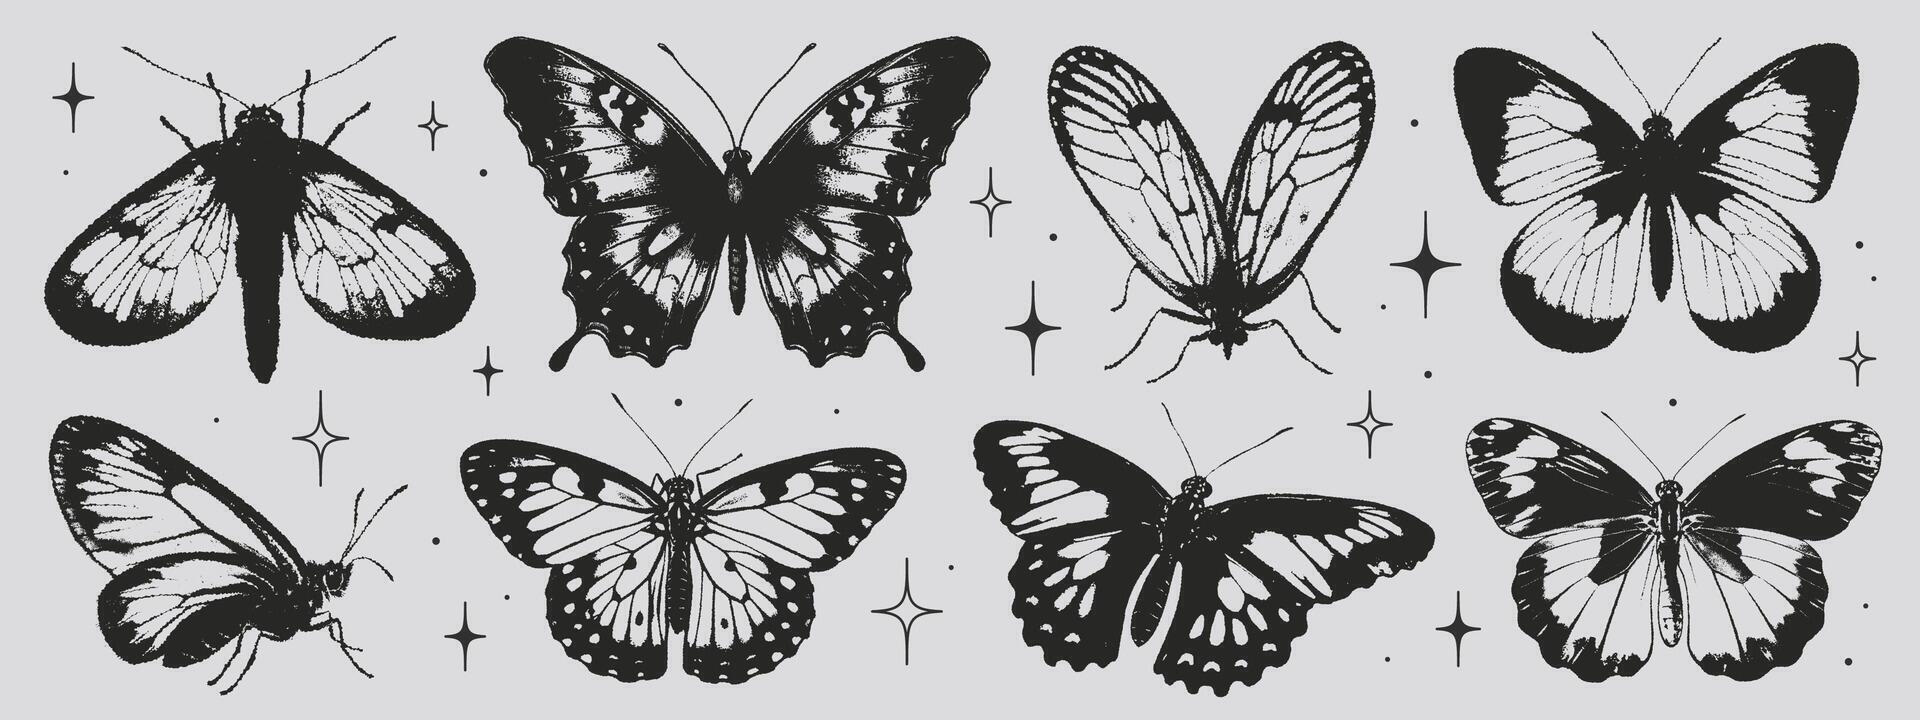 mariposas de negro alas en el estilo de grunge sello y orgánico formas y2k estético, tatuaje silueta, mano dibujado pegatinas vector gráfico en de moda retro 2000 estilo. grano textura mariposa